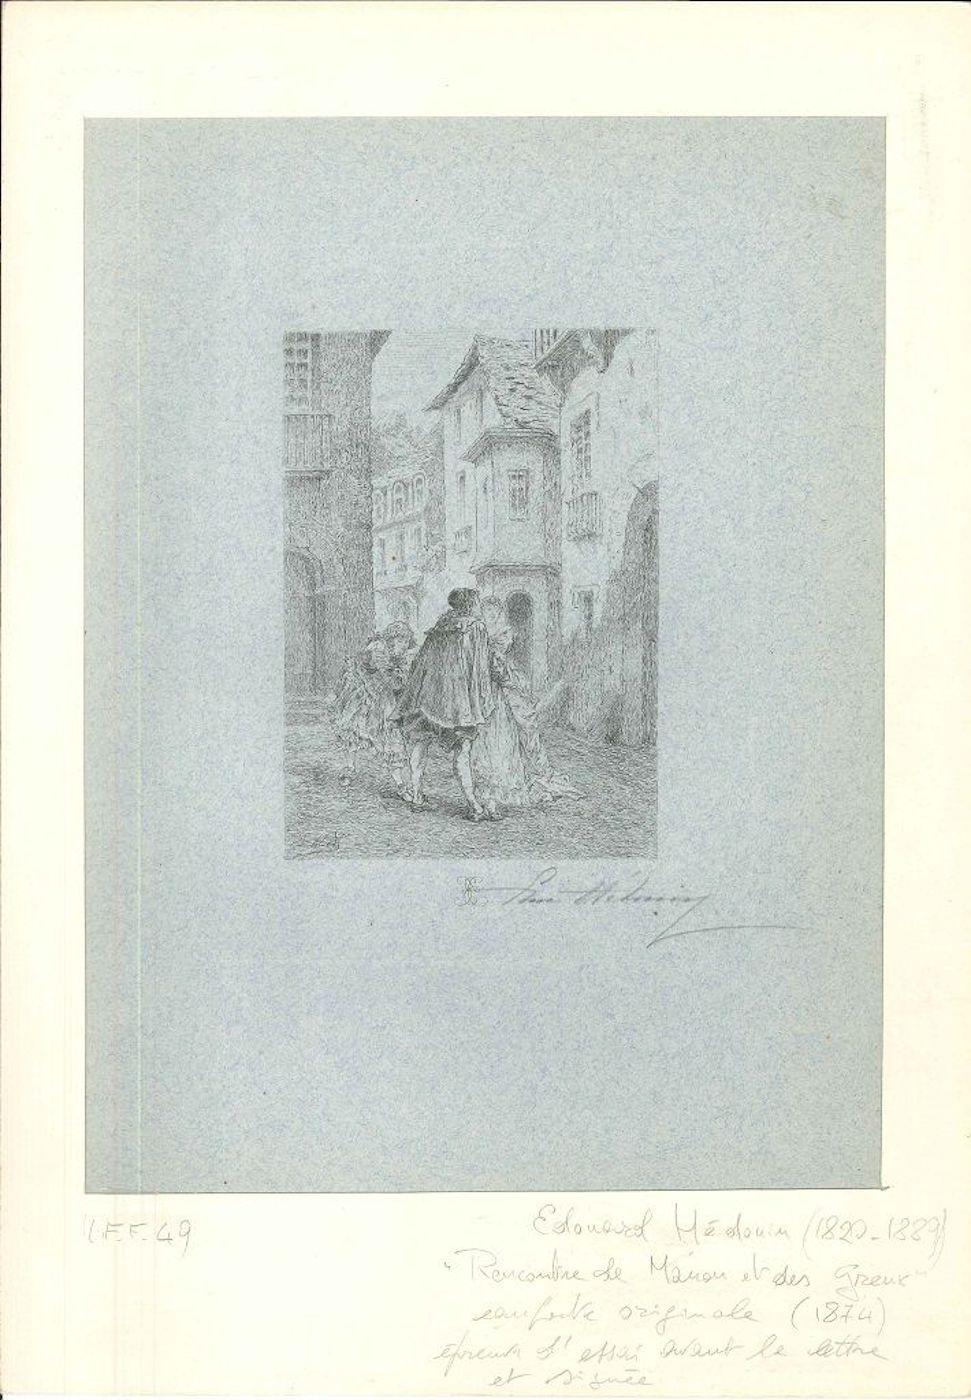 Bildmaße 13,3x9 cm.
Rencontre de Manon et des Greux ist ein Originalkunstwerk von Edouard Médouin aus dem Jahr 1874. 
Original-Radierung auf farbigem Papier. Passepartout inklusive.
Handsigniert vom Künstler in der rechten unteren Ecke. Signiert auf